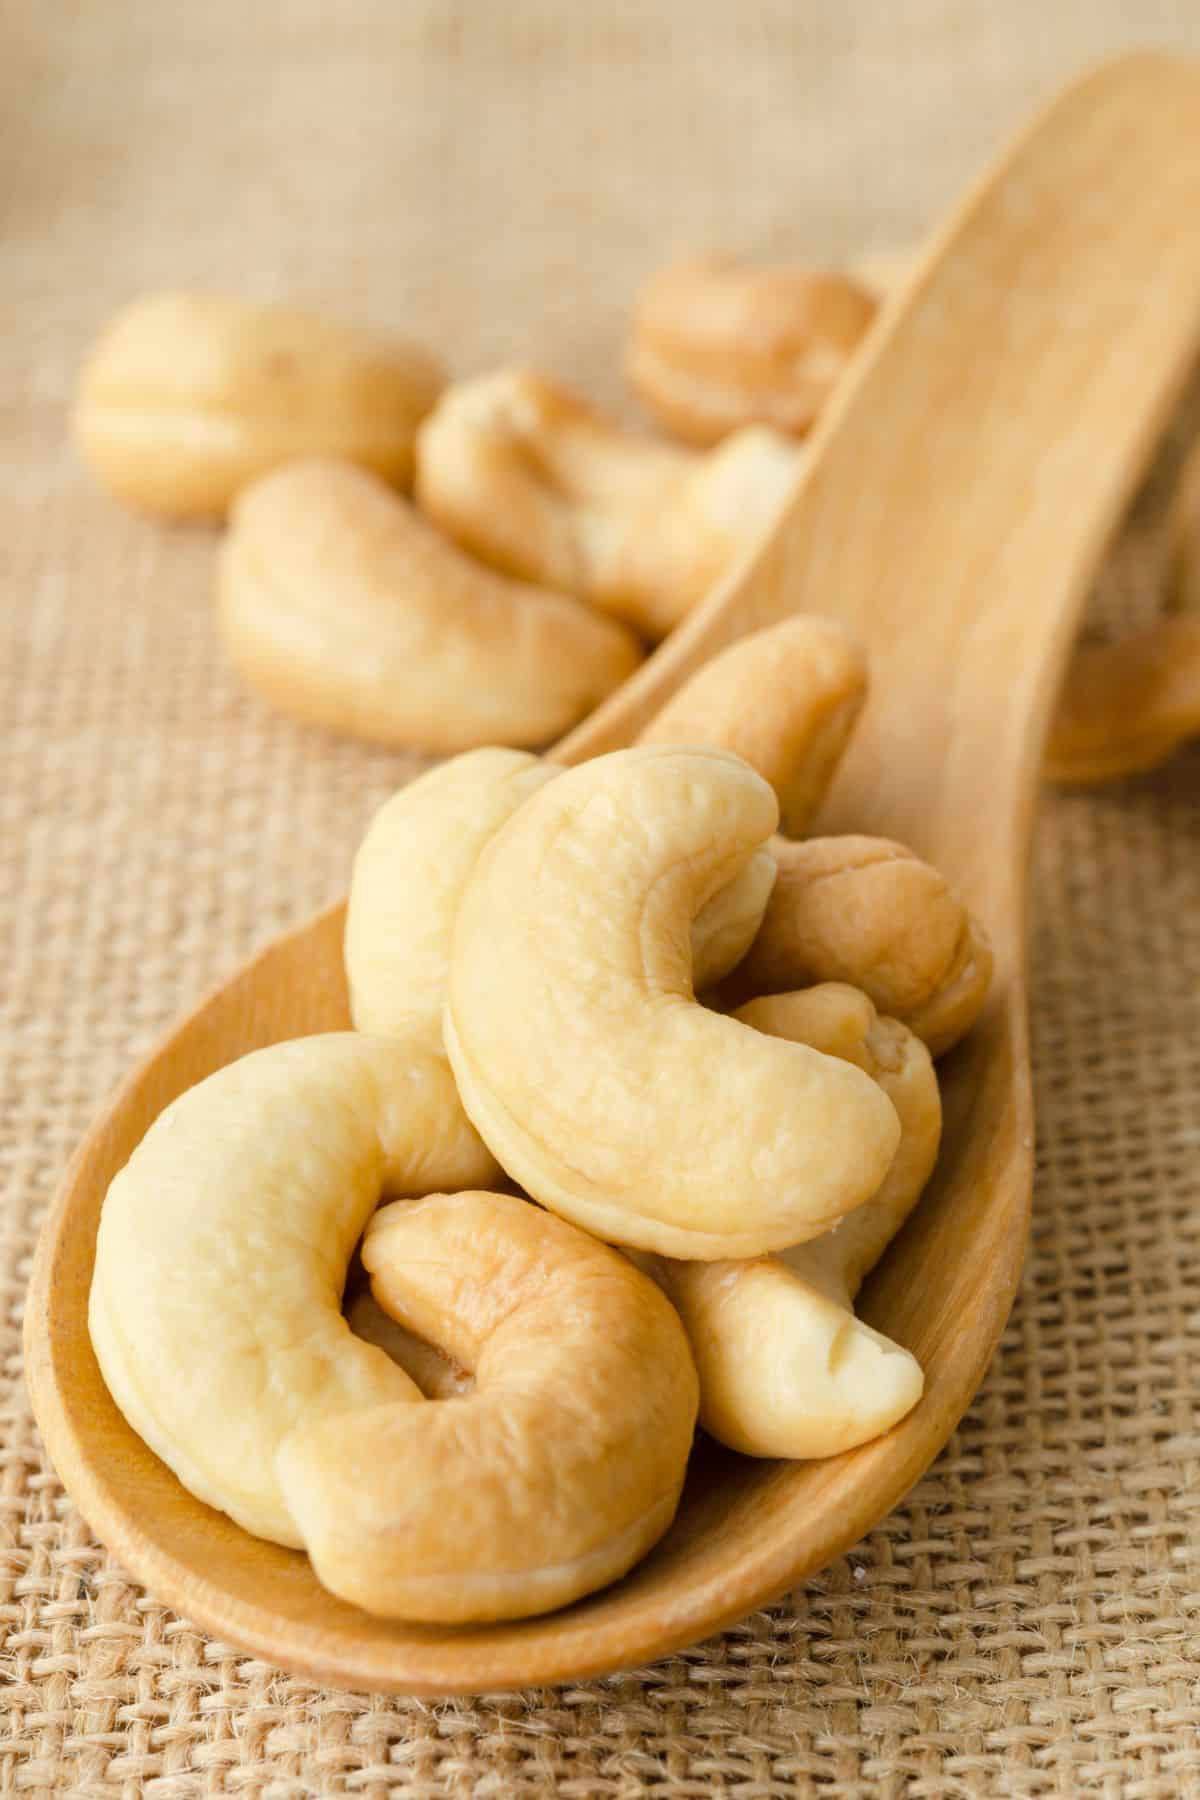 raw cashews